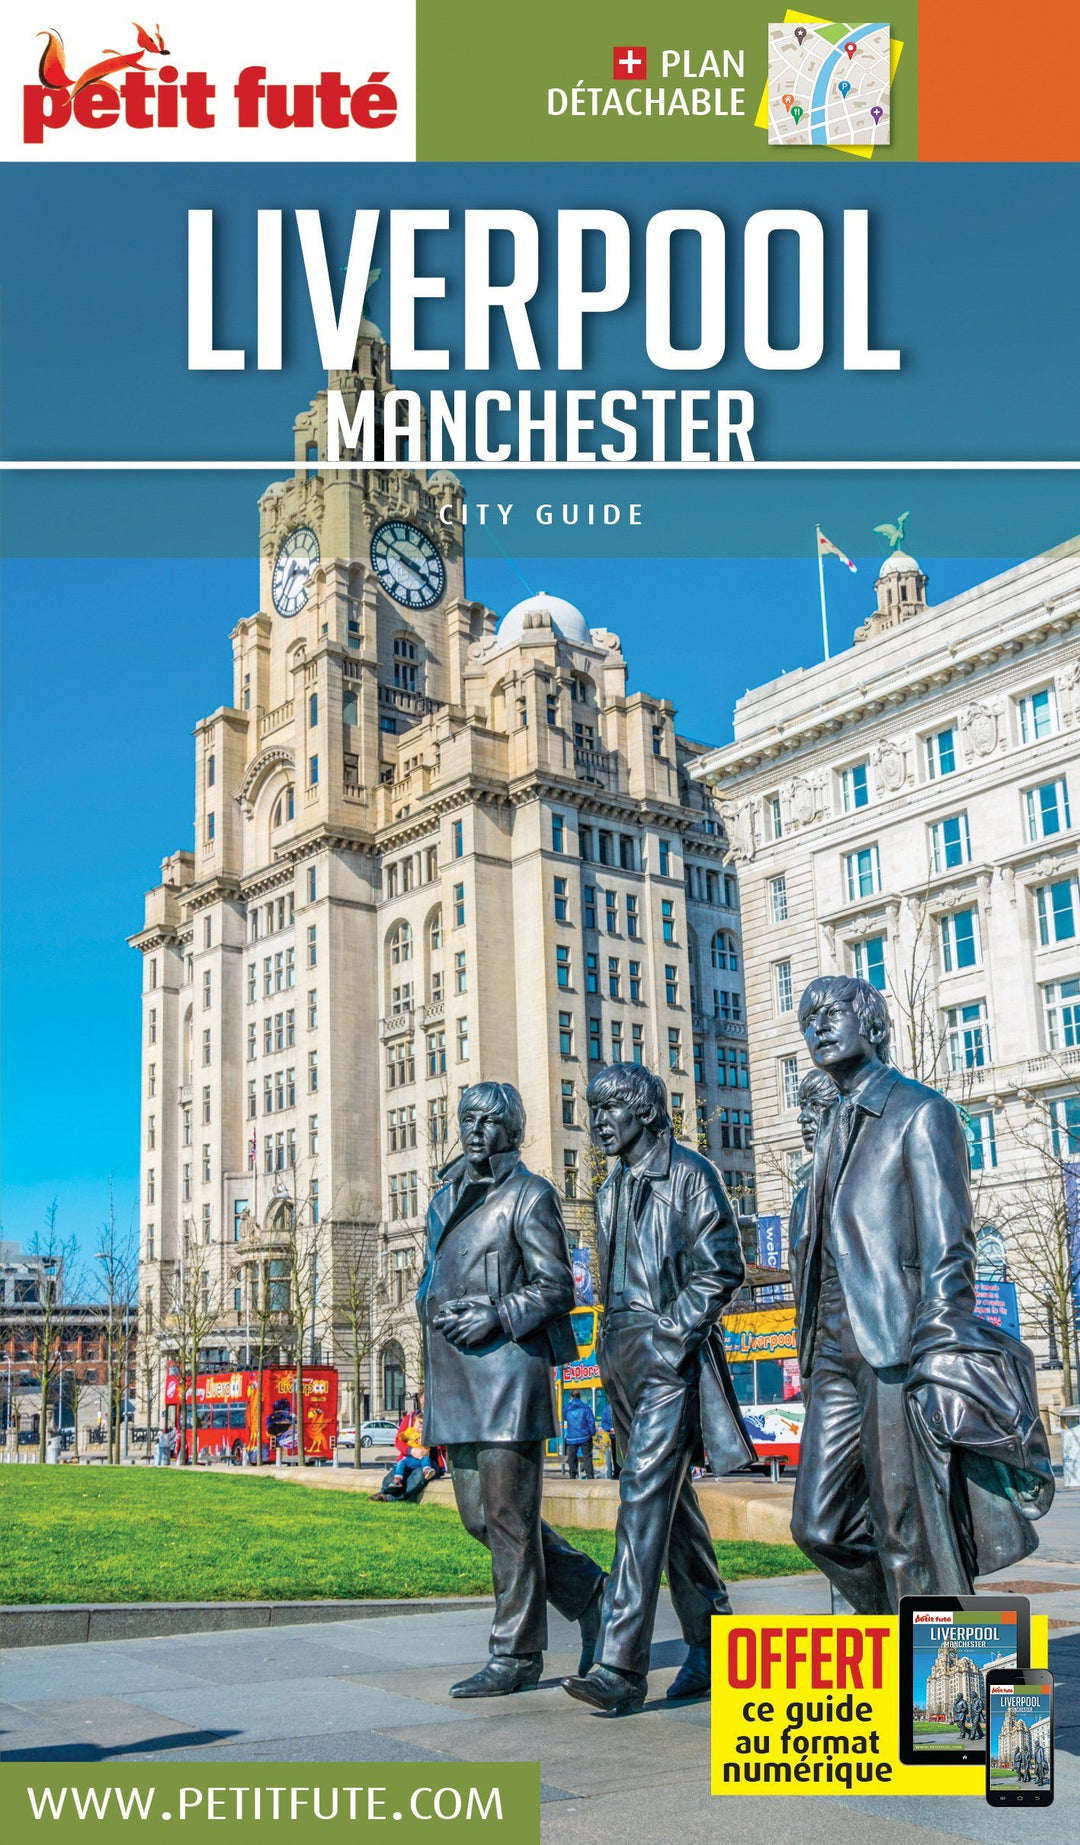 Guide de voyage - Liverpool, Manchester + plan 2020/21 | Petit Futé guide de voyage Petit Futé 